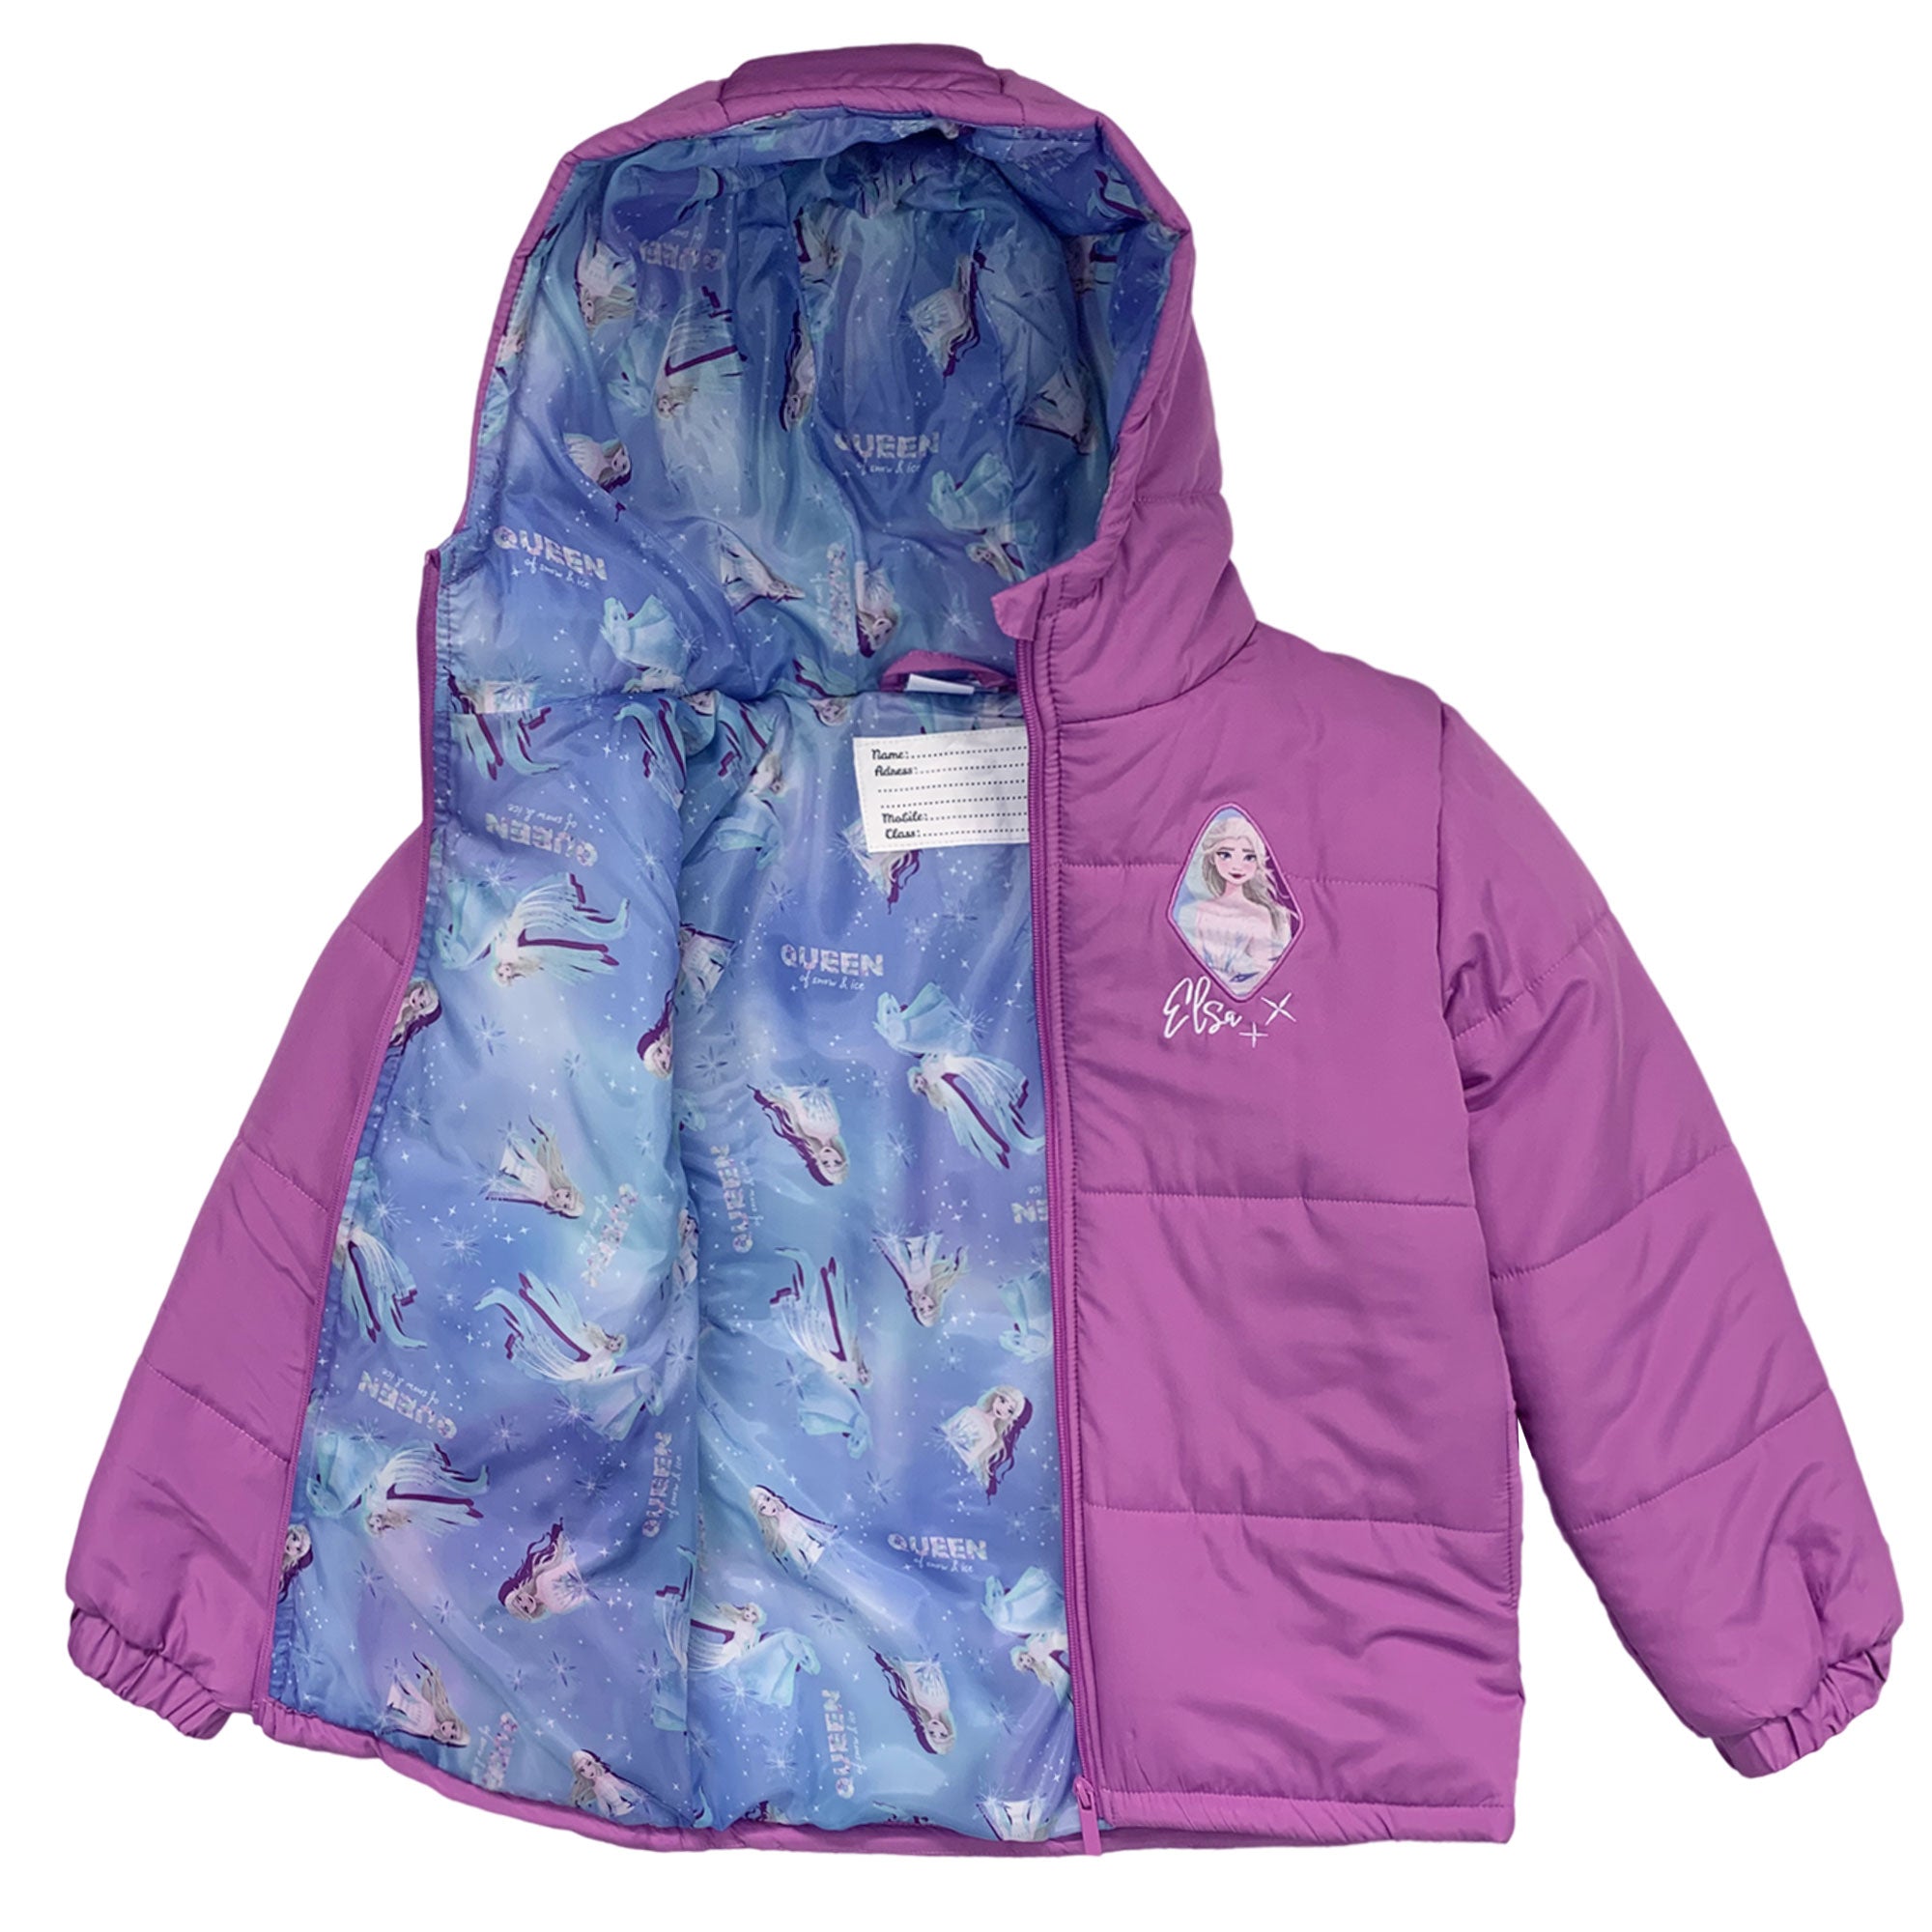 Giubbotto bambina invernale piumino Disney Frozen Impermeabile cappuccio 6260